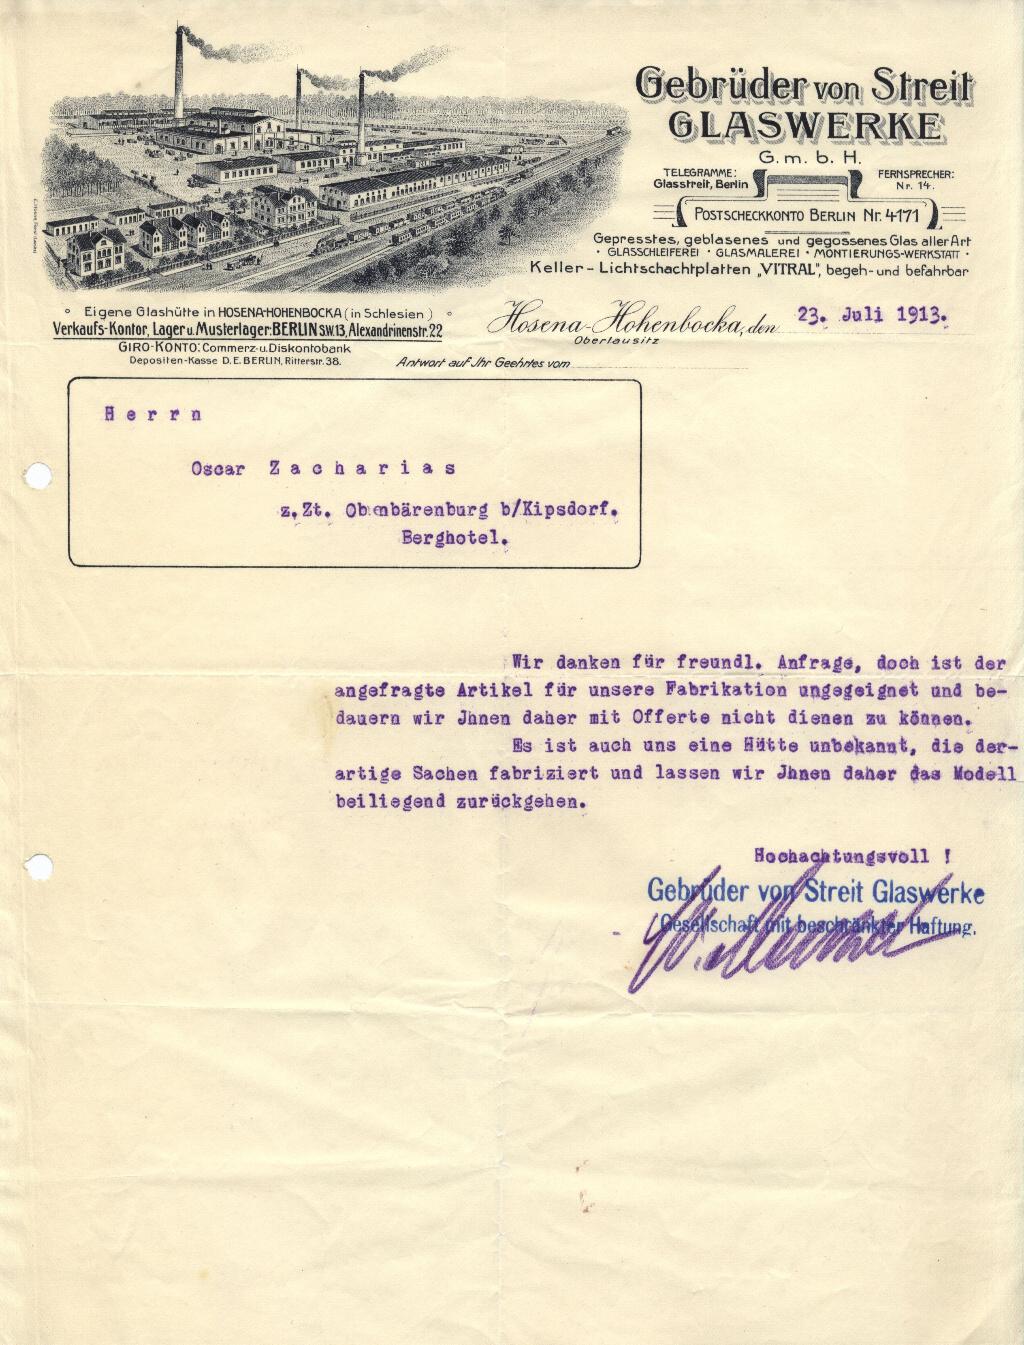 "Gebr. Von Streit 1913"